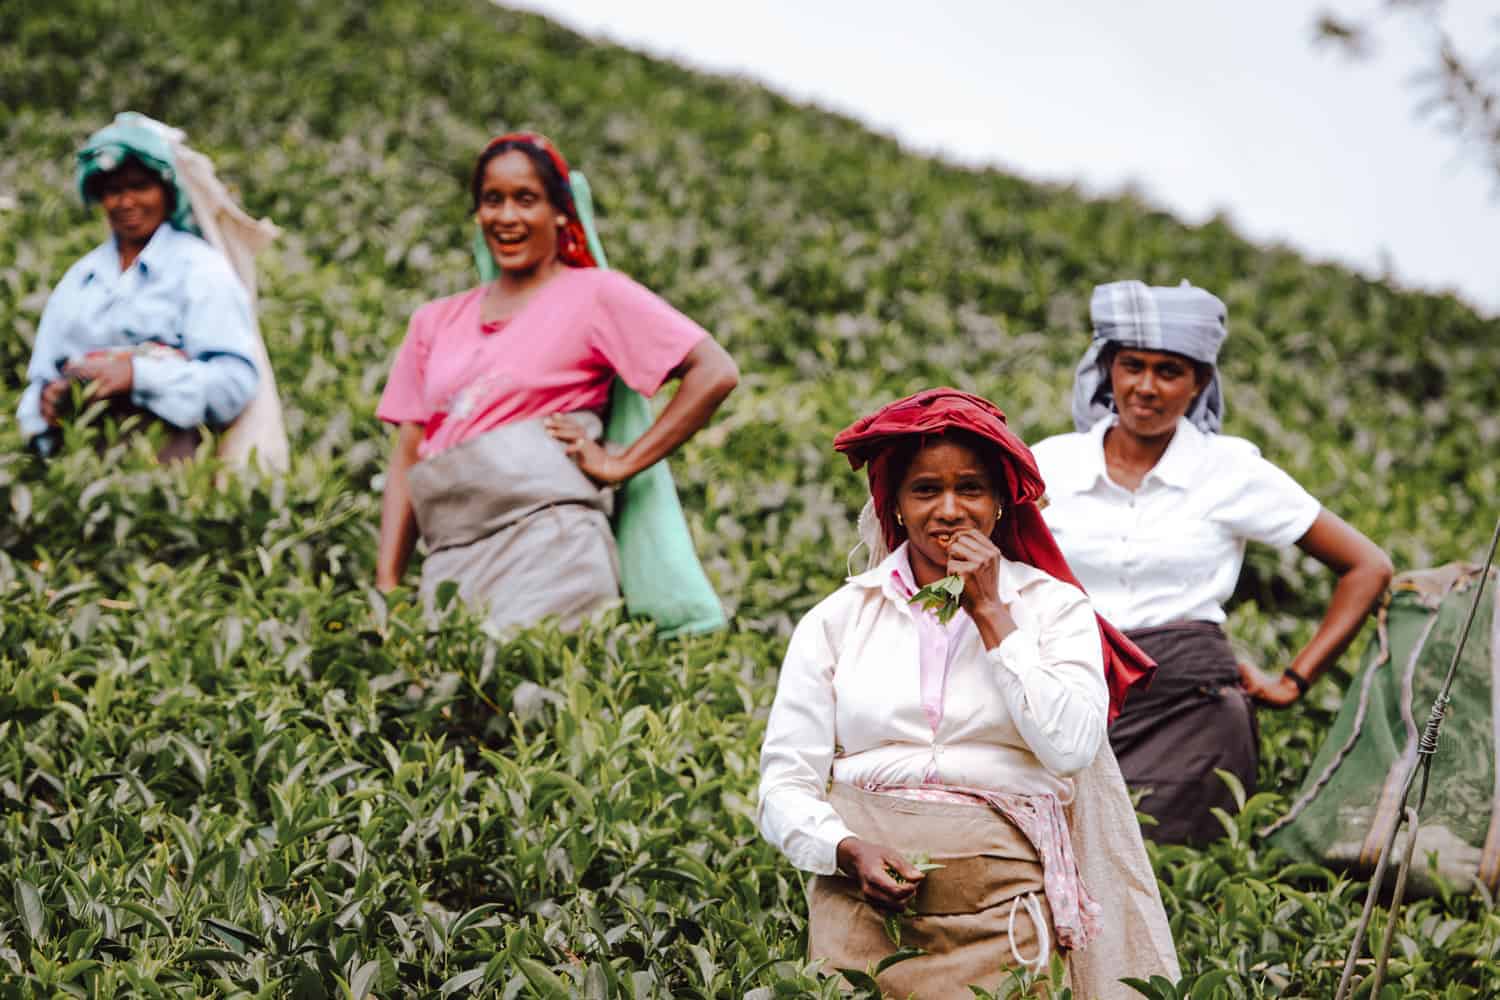 Tea Lover's Guide to Sri Lanka